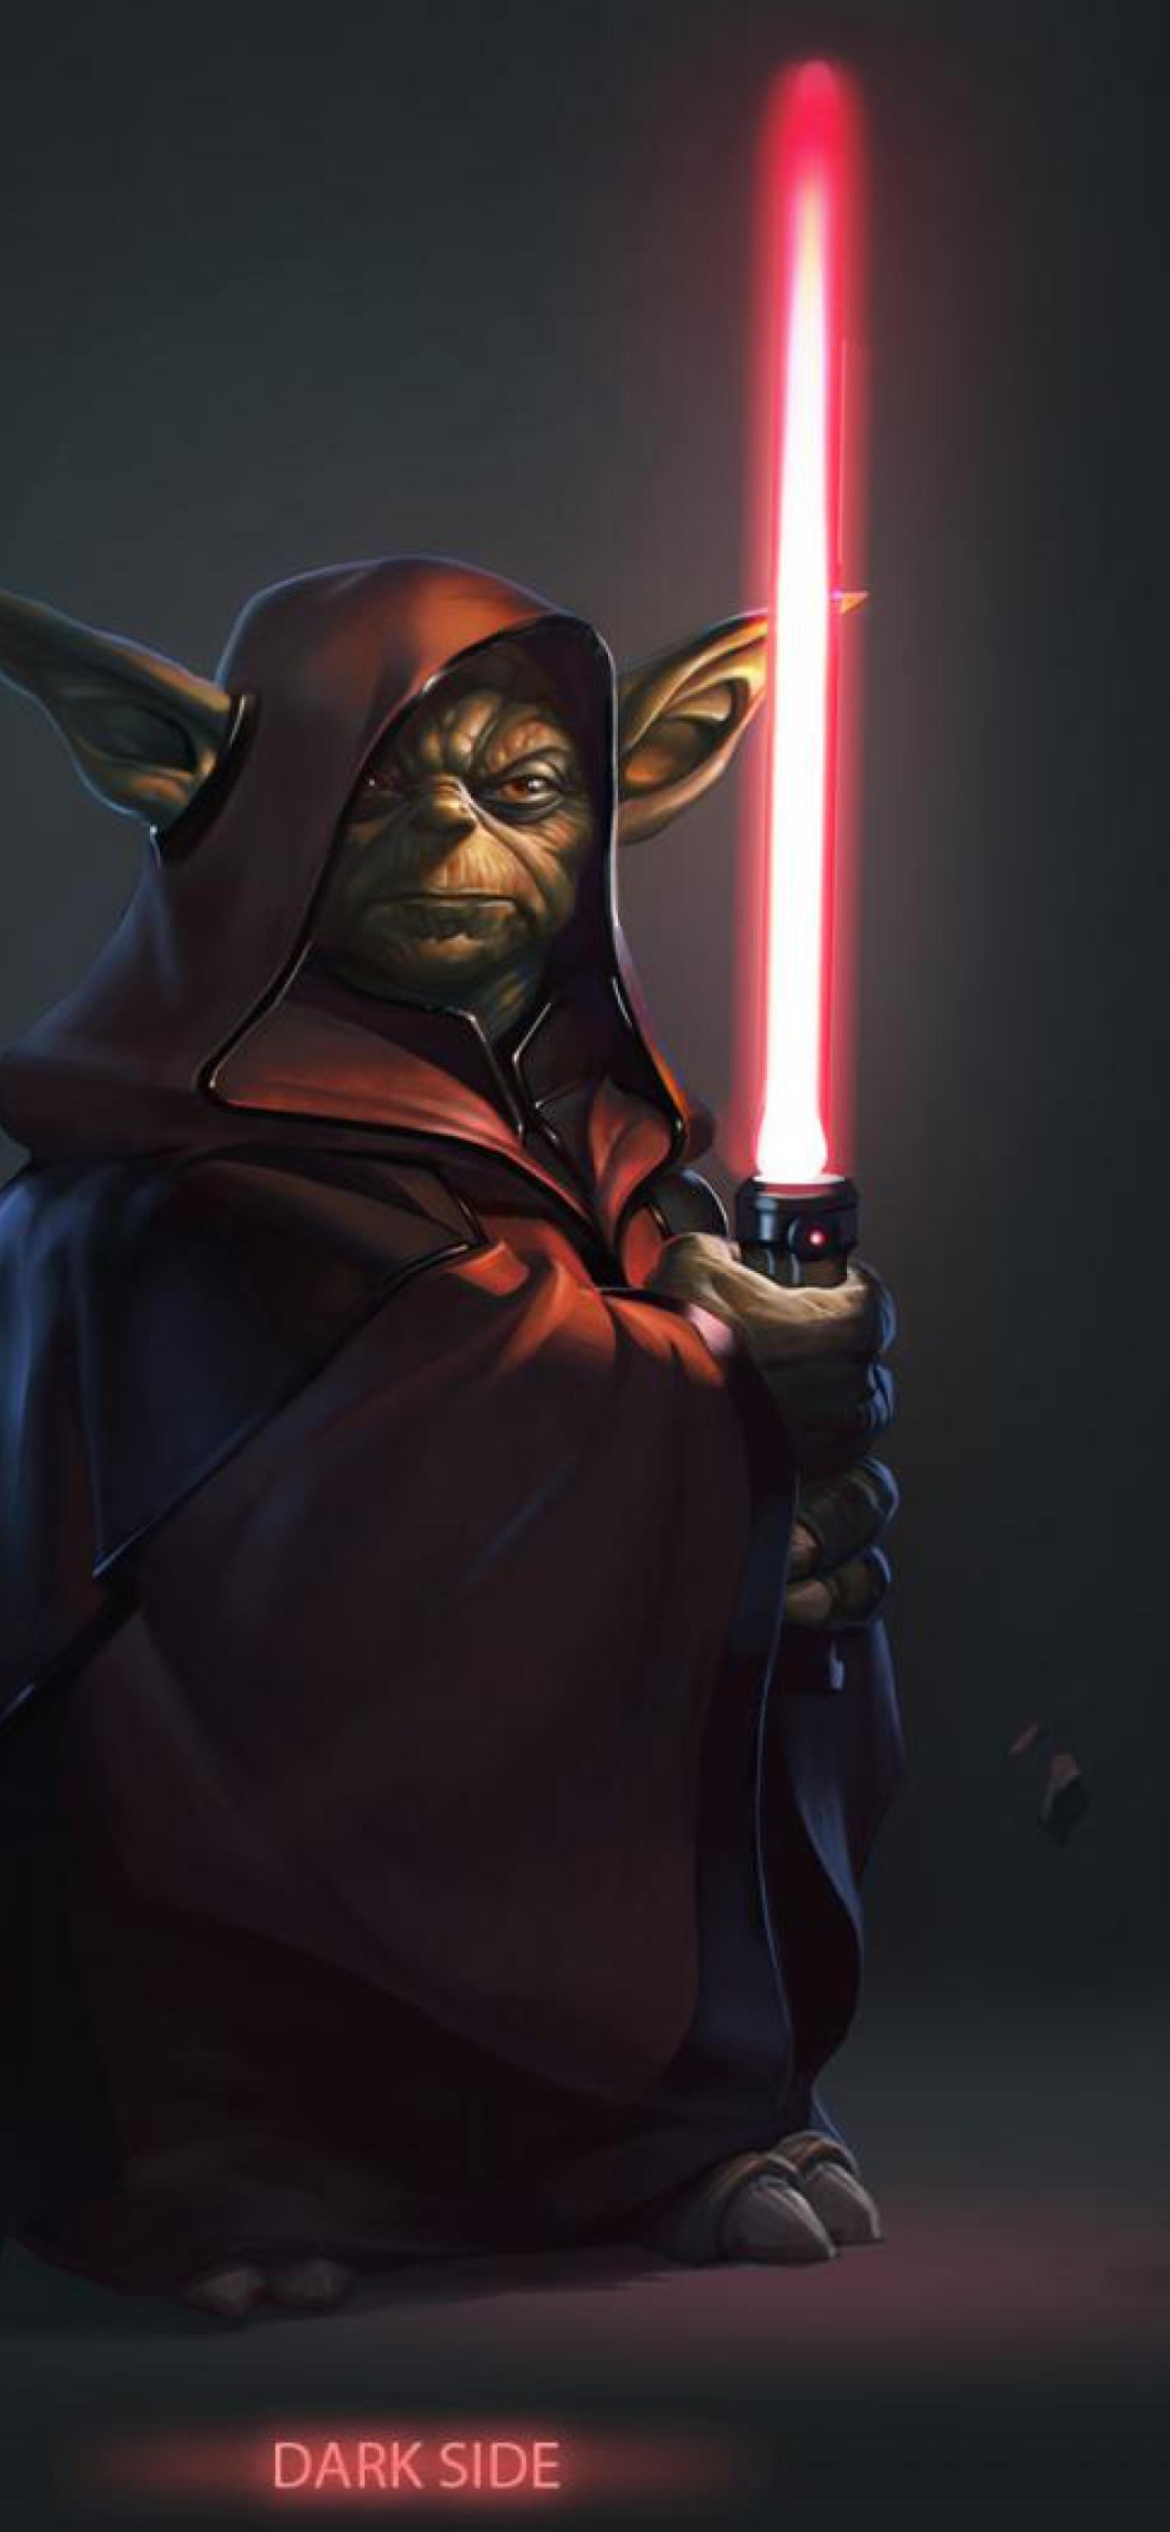 Обои Yoda - Star Wars 1170x2532